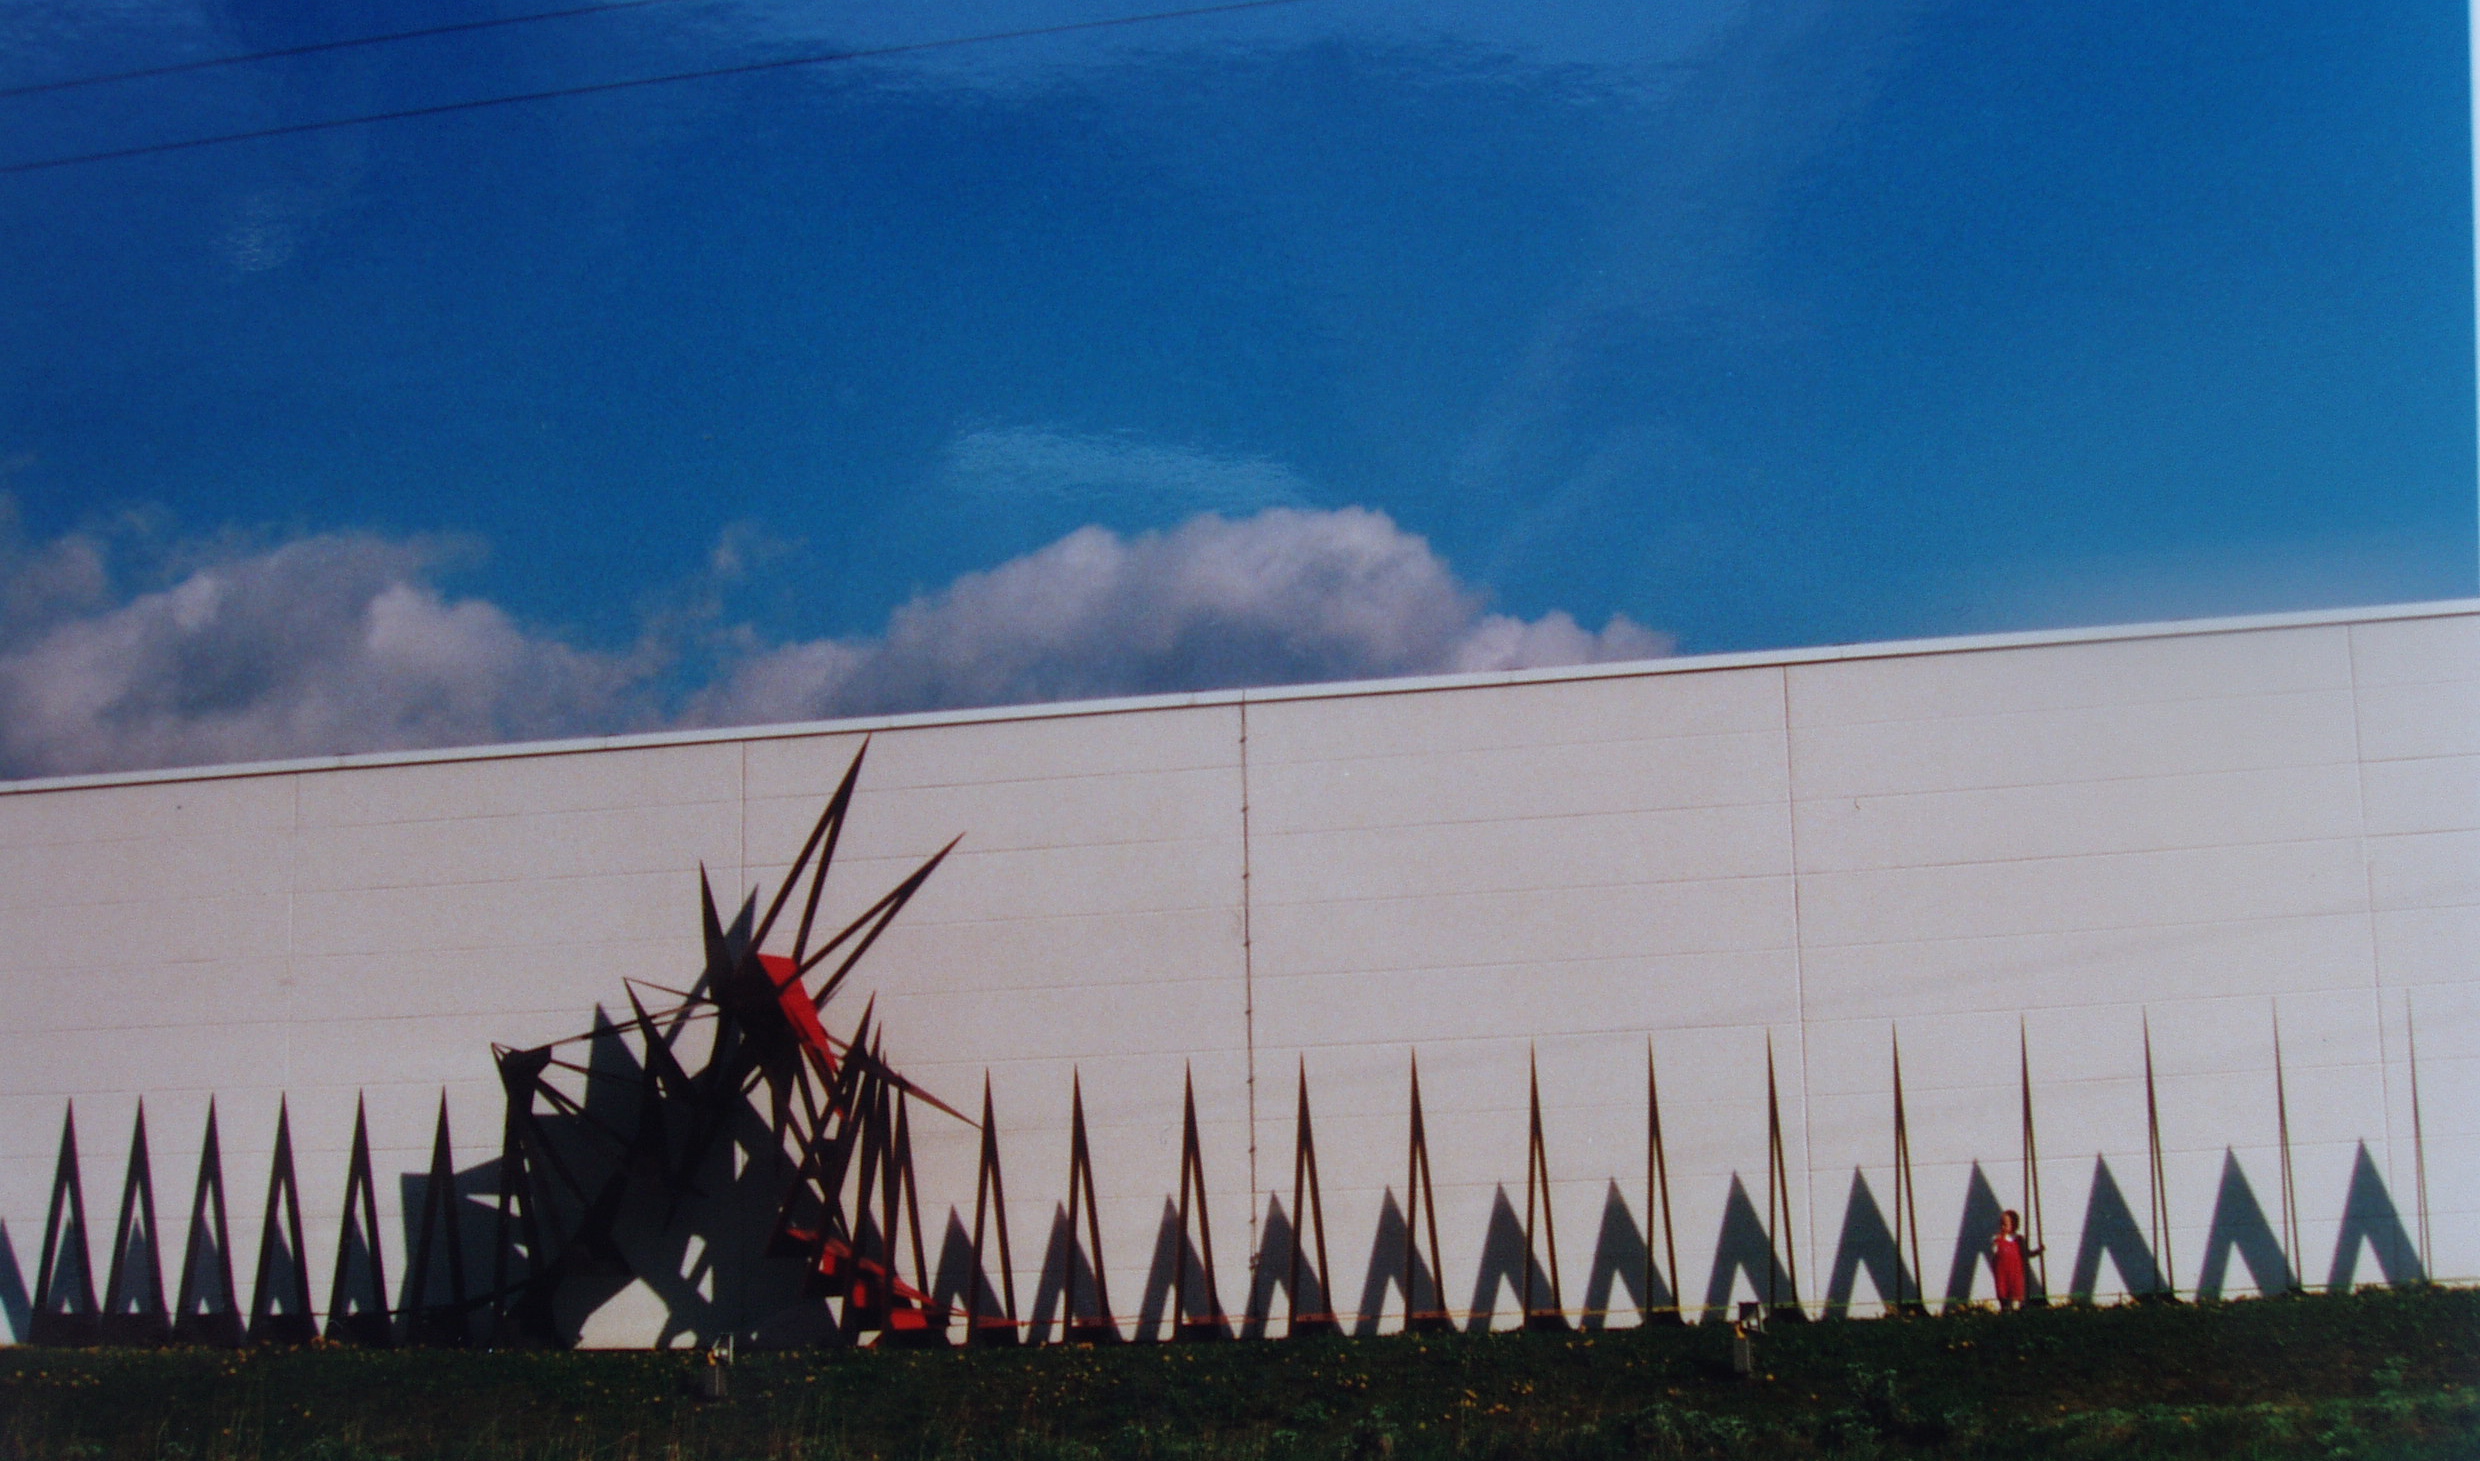 hier zeigt sich die gigantische Gr&ouml;sse des Metall Kunstwerk, 6m hoch, 24 m lang und 1,25m breit, inspiriert von der Phasenfotografie - Darstellung eines Salto, Anlauf Turbulenzen und wieder saubere Landung, K&uuml;nstler Mirko Siakkou-Flodin